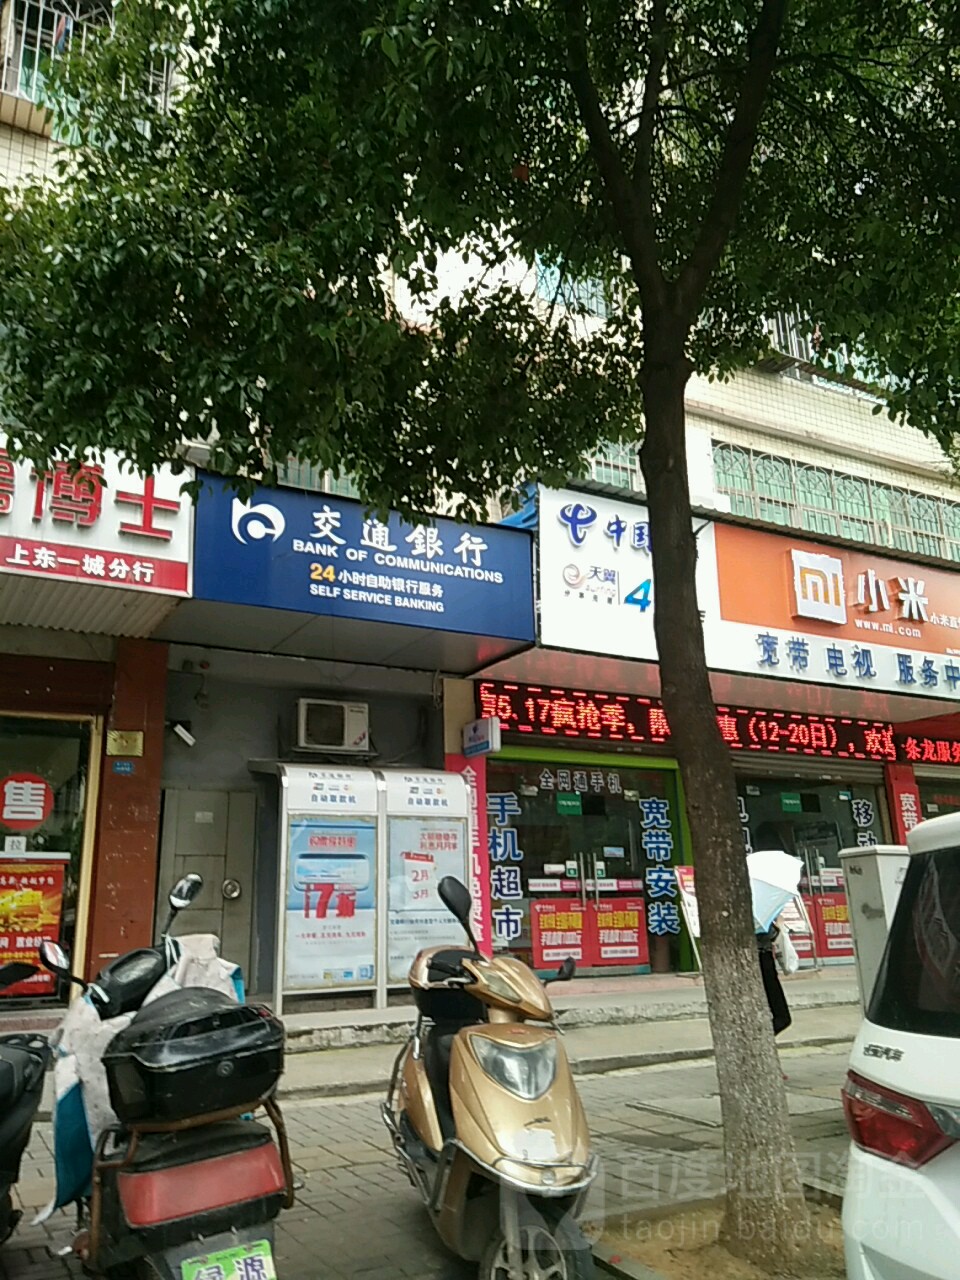 岳阳农村商业银行24小时自助银行服务